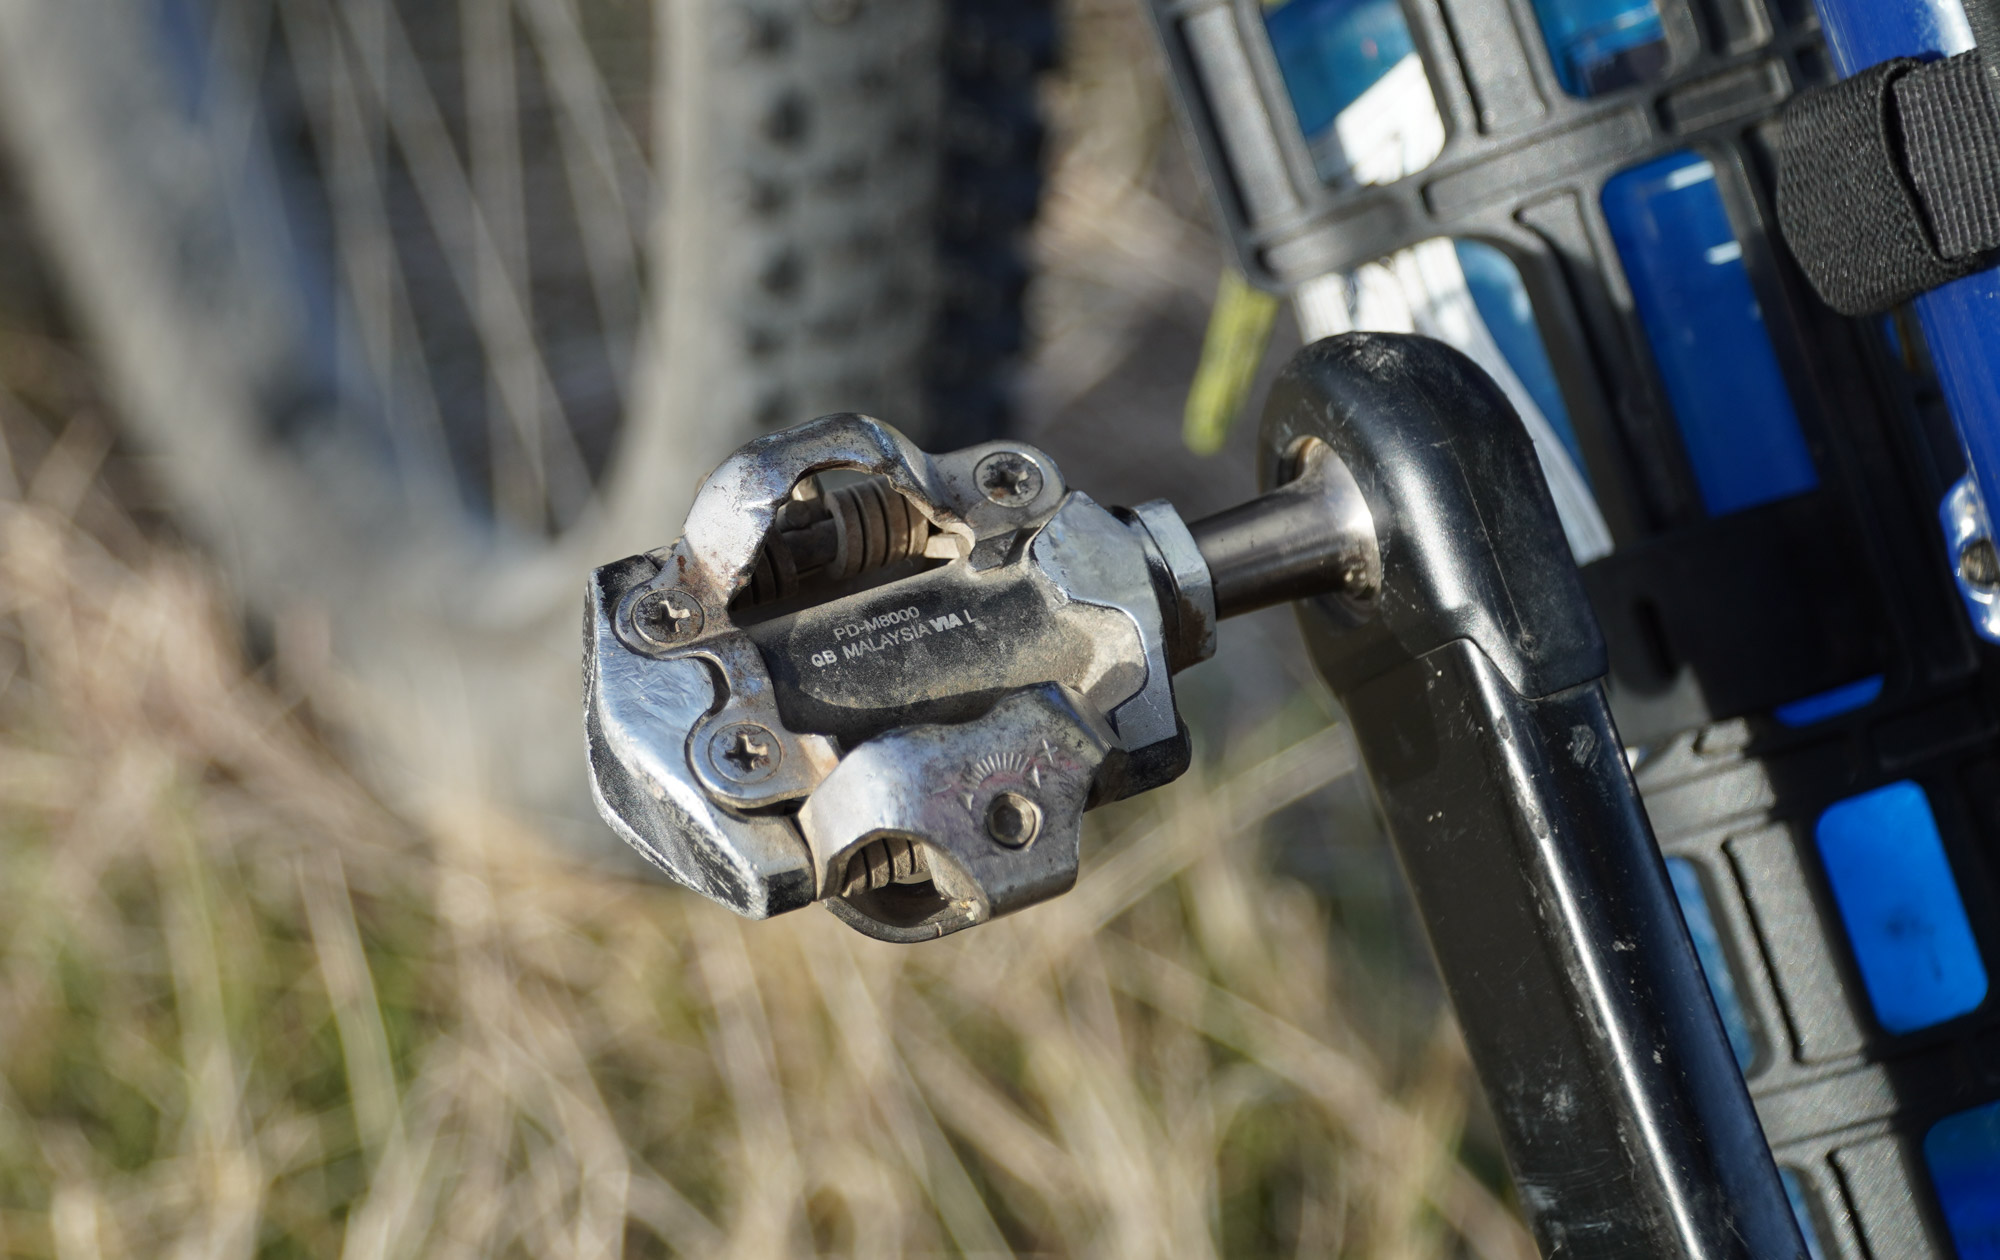 A worn Shimano XT pedal.